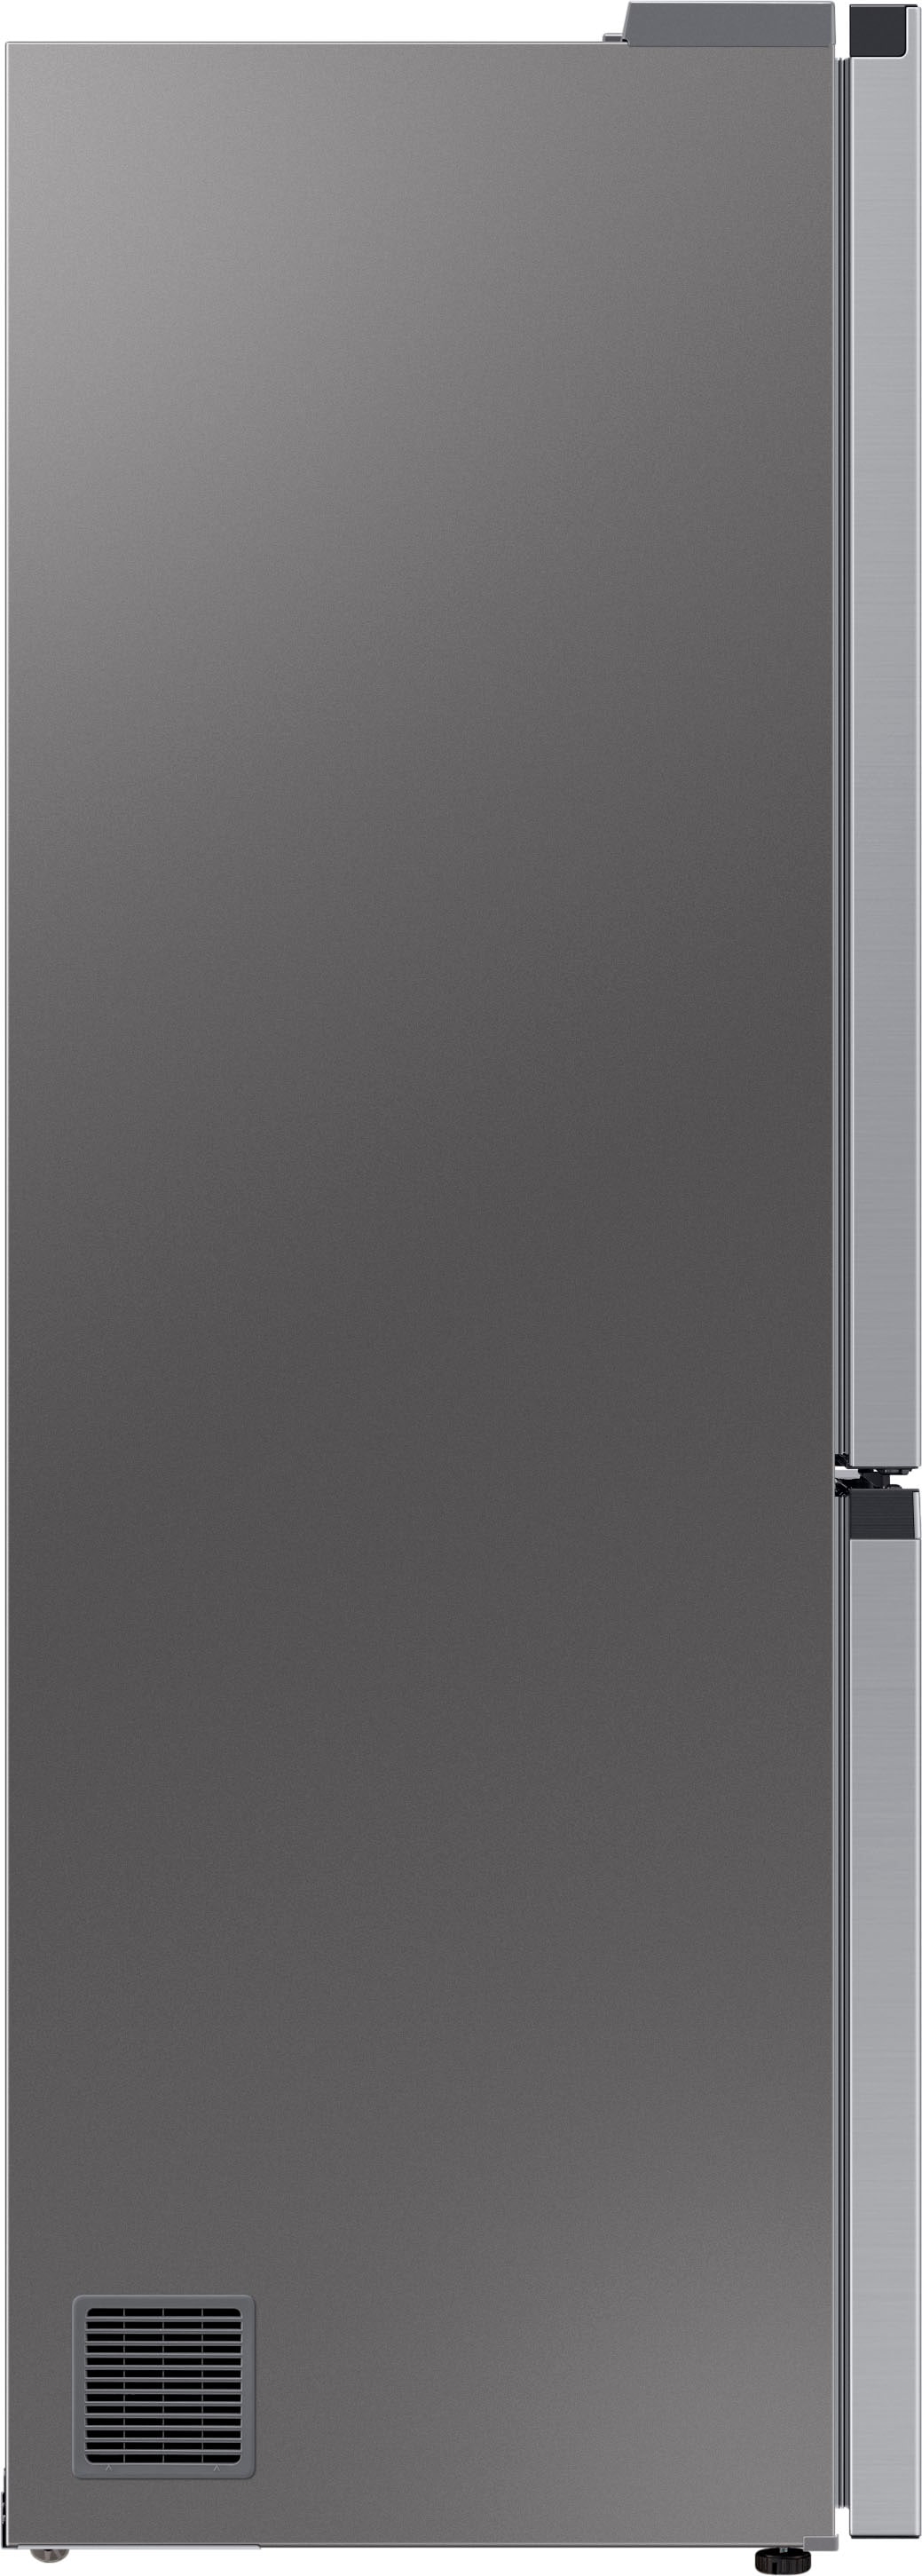 Samsung Kühl-/Gefrierkombination »RL34T600C«, RL34T600CSA, 185,3 cm hoch, 59,5 cm breit